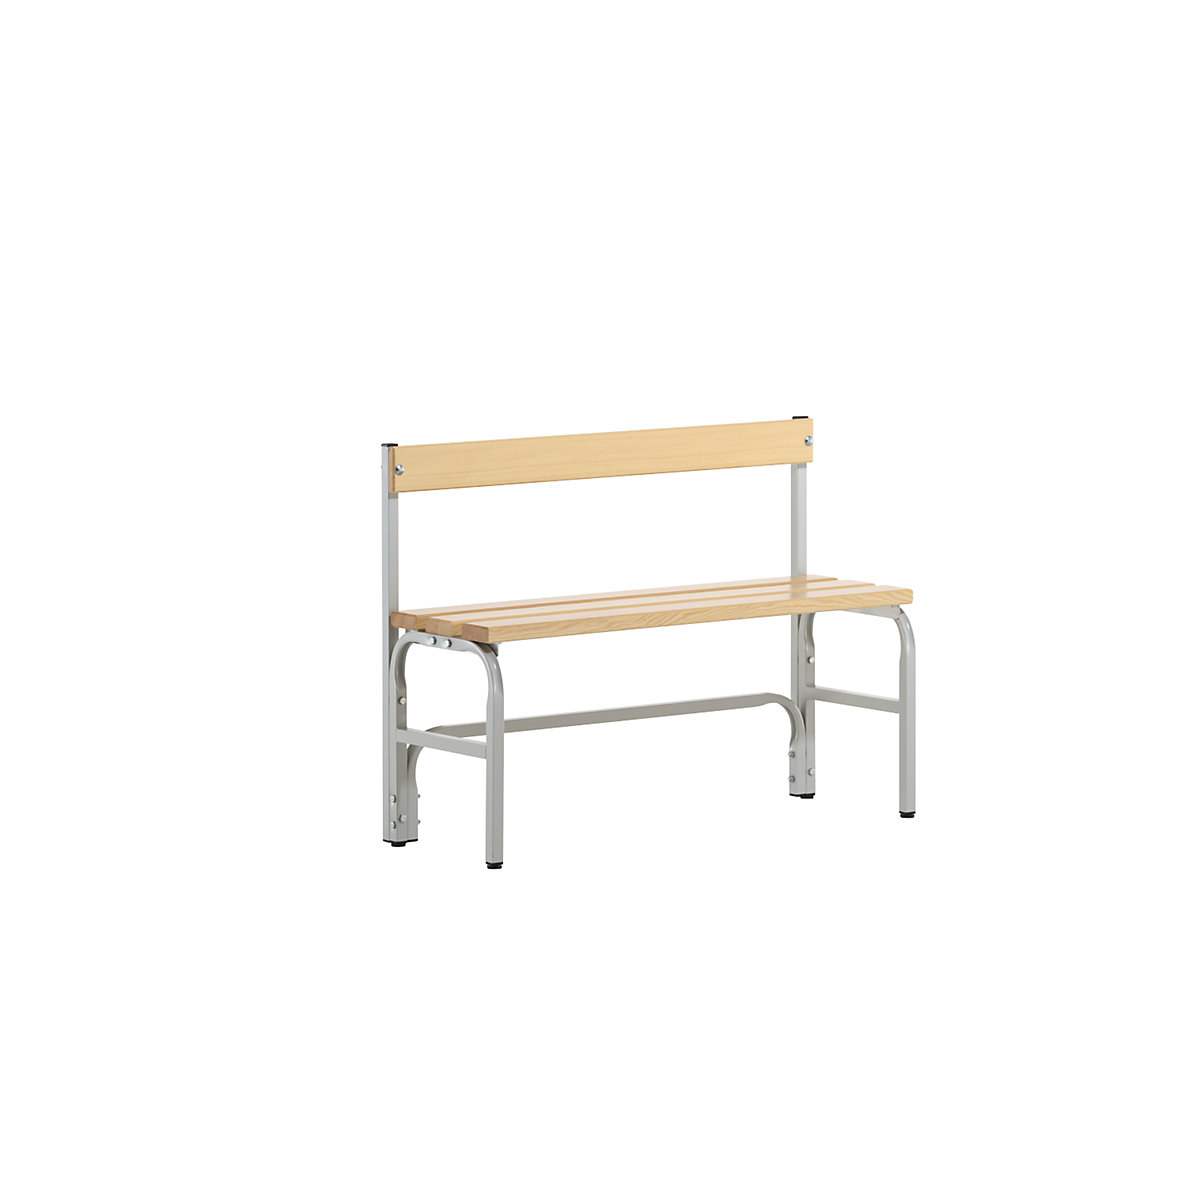 Sypro – Panca per spogliatoi, altezza media con schienale, un lato utile, doghe in legno di pino, lunghezza 1015 mm, grigio chiaro